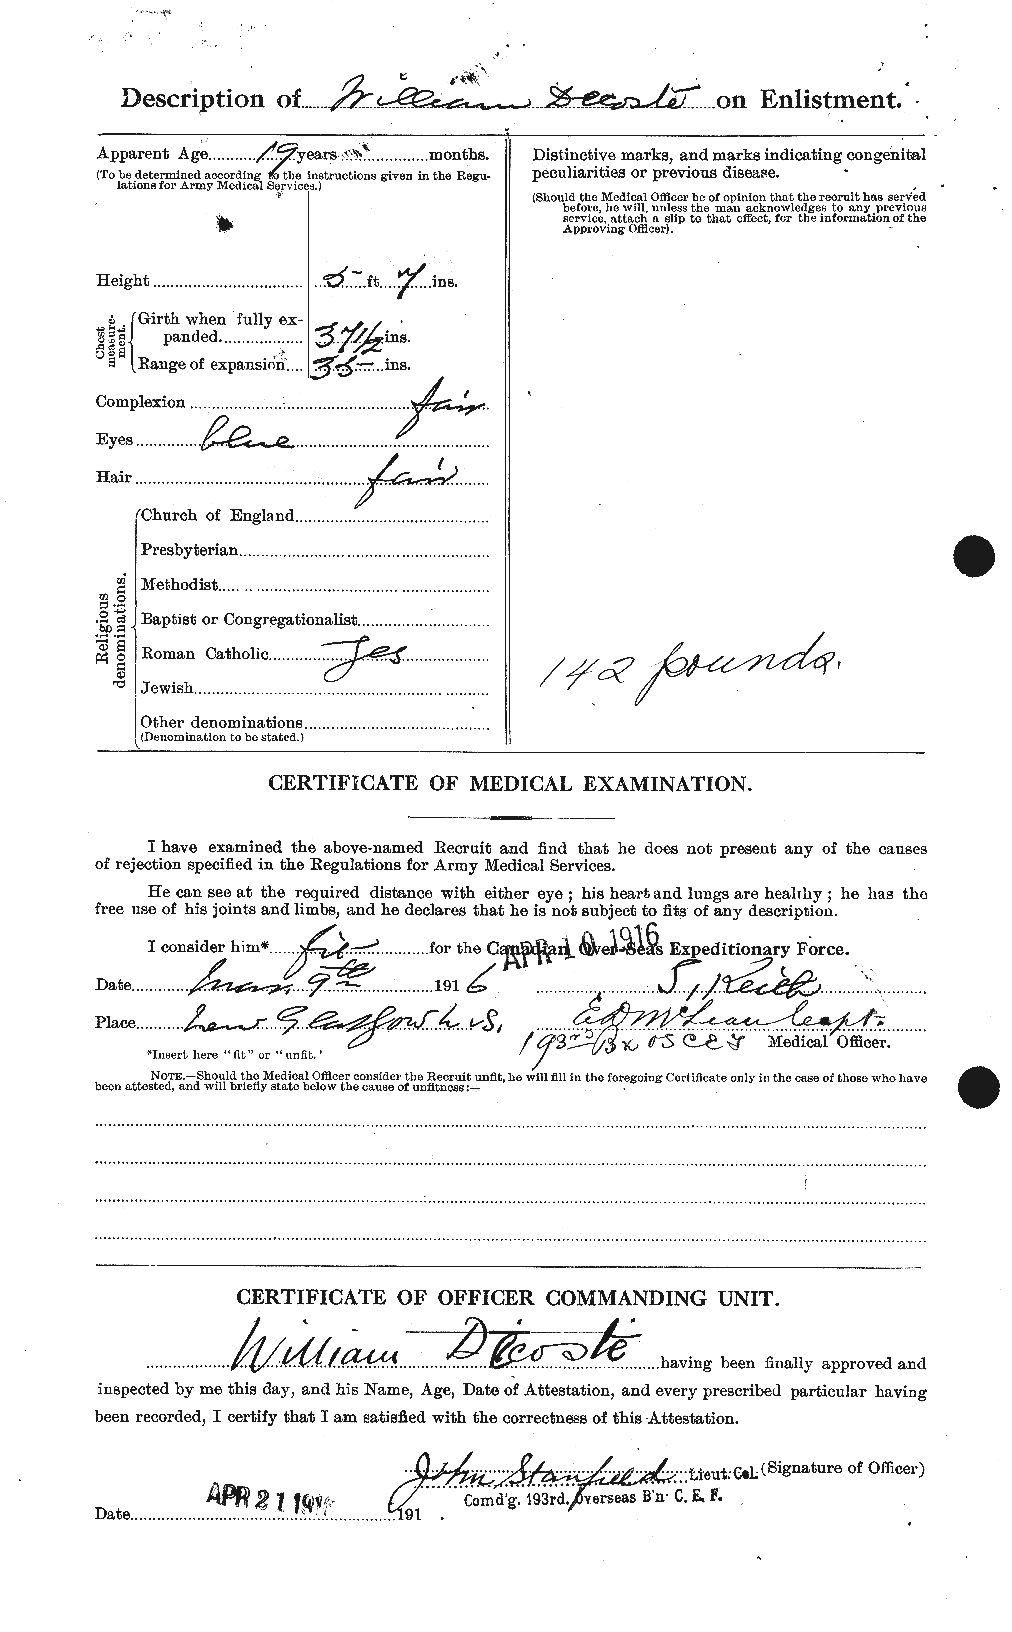 Dossiers du Personnel de la Première Guerre mondiale - CEC 289216b